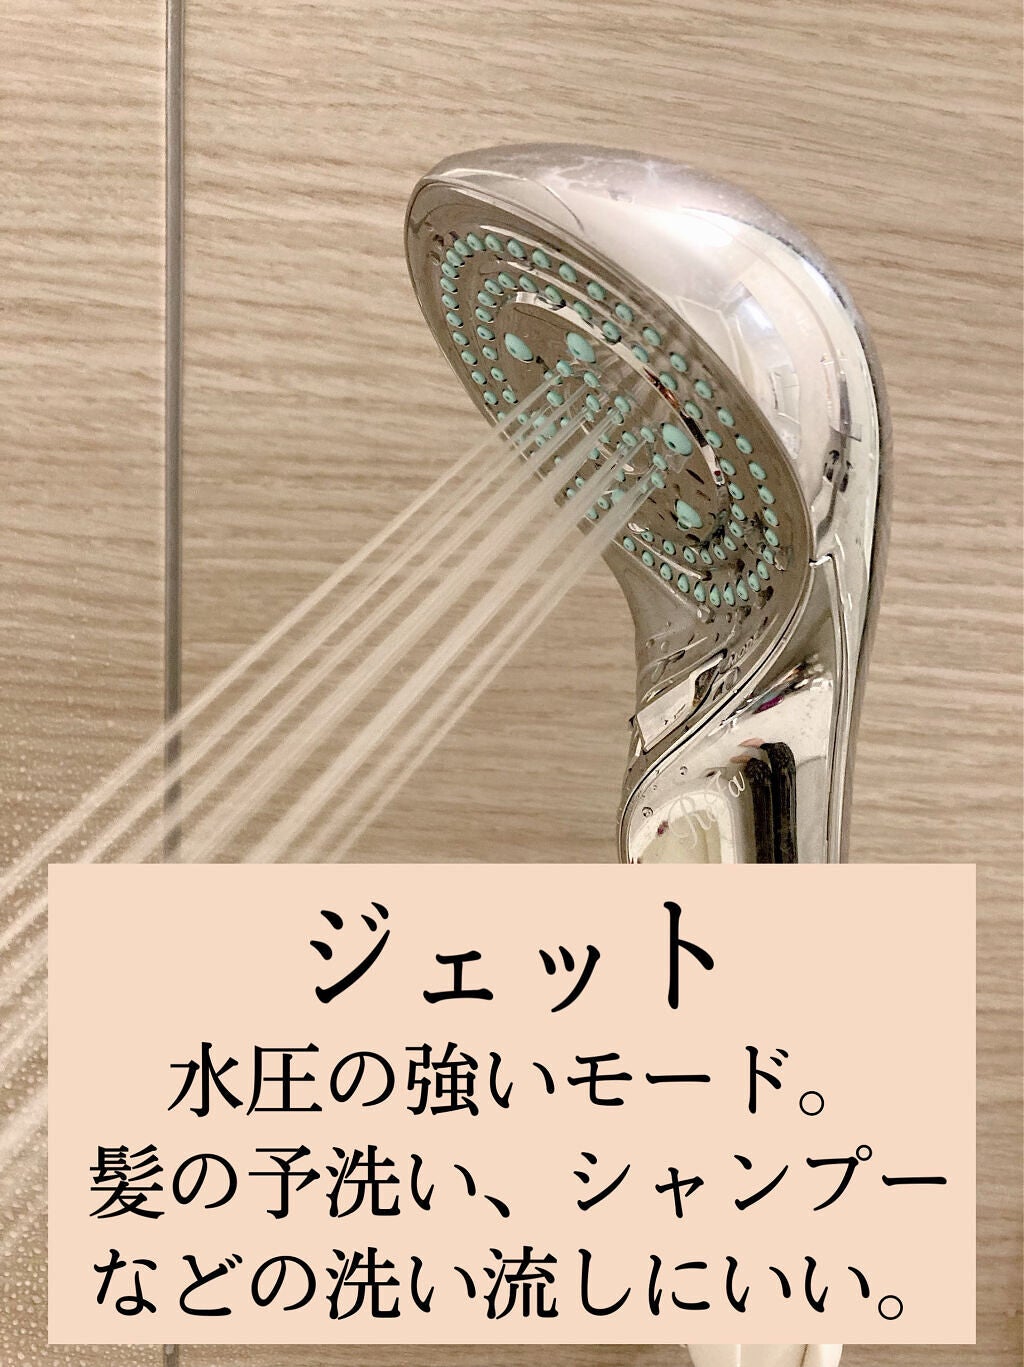 ファインバブルS｜ReFaの効果に関する口コミ - ワンランク上のシャワー